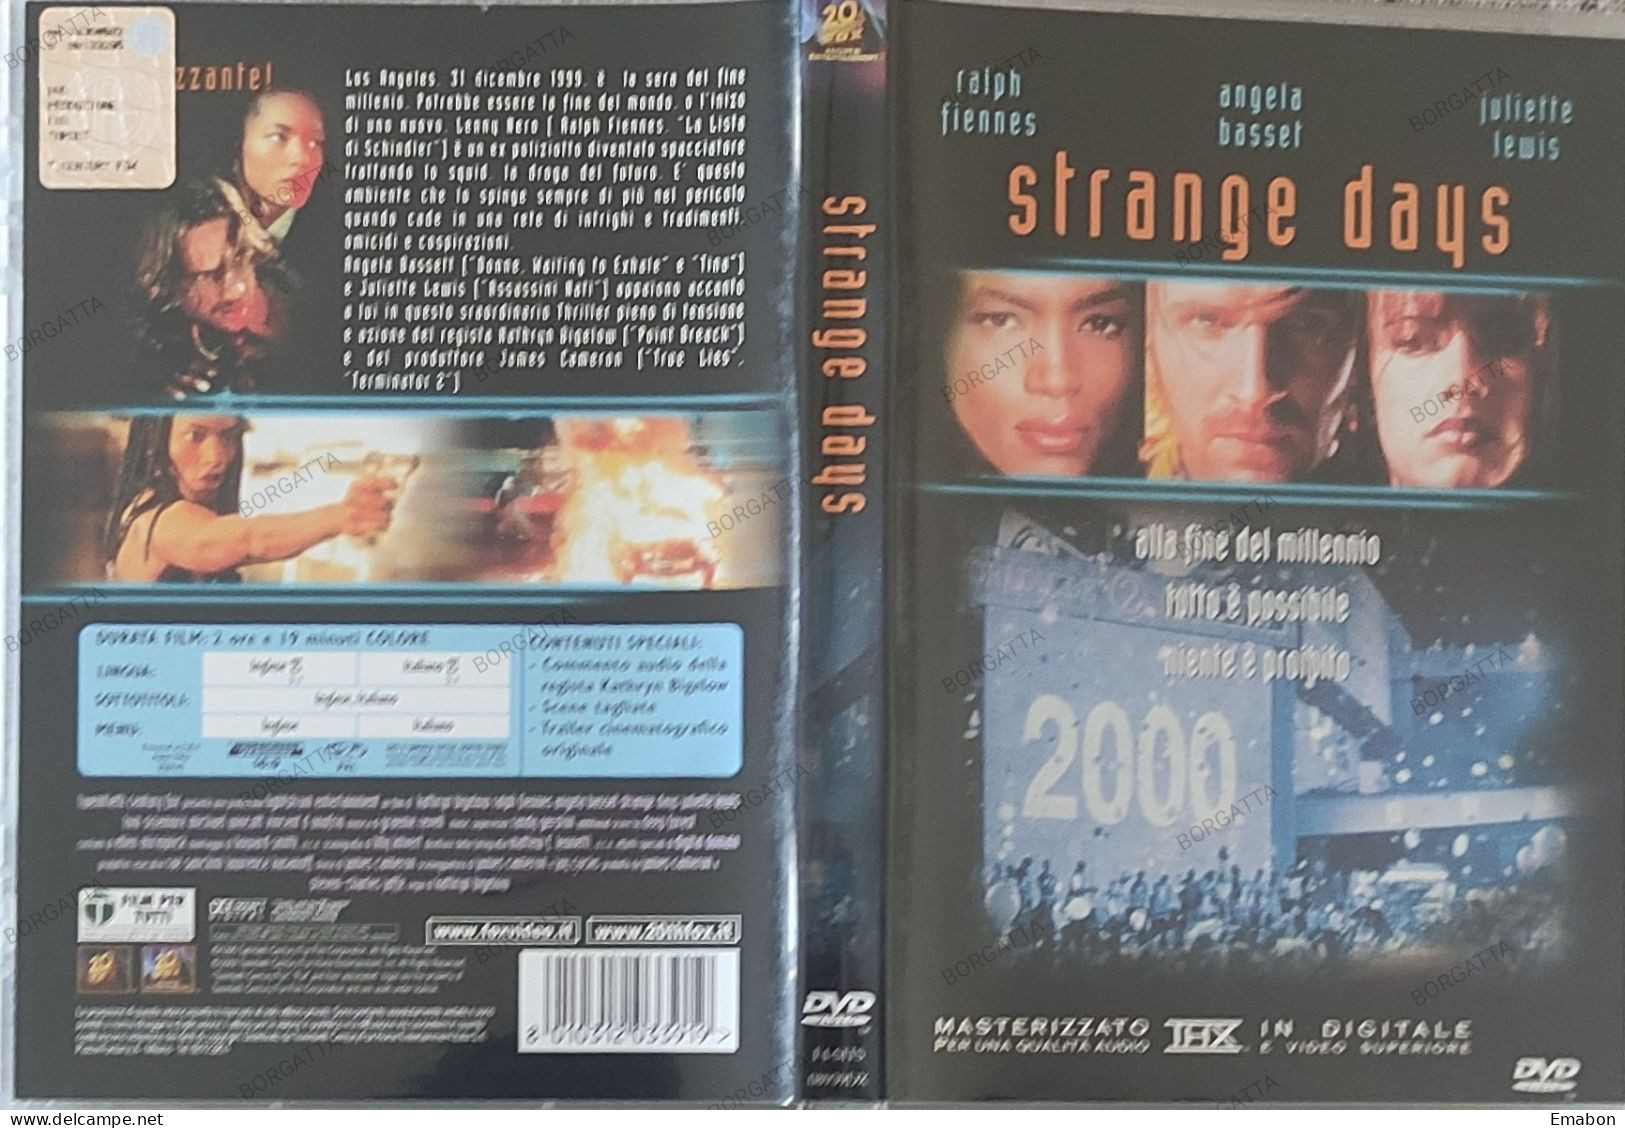 BORGATTA - FANTASCIENZA - Dvd STRANGE DAYS - FIENNES, BASSET  - PAL 2 - 20THFOX 2002- USATO In Buono Stato - Sciences-Fictions Et Fantaisie